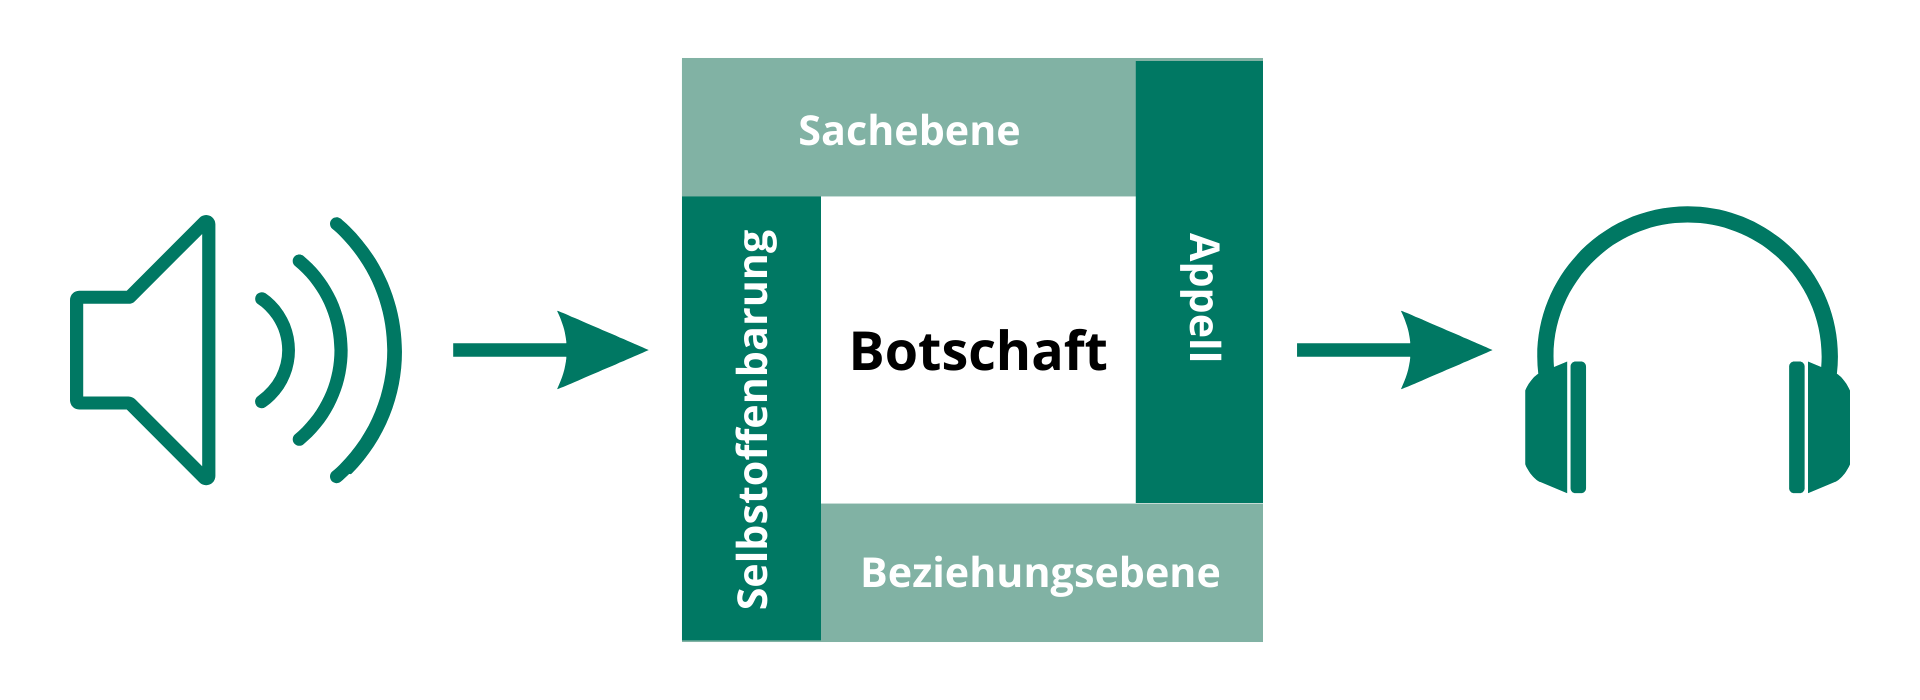 Eine Abbildung des Kommunikationsquadrats von Schulz von Thun